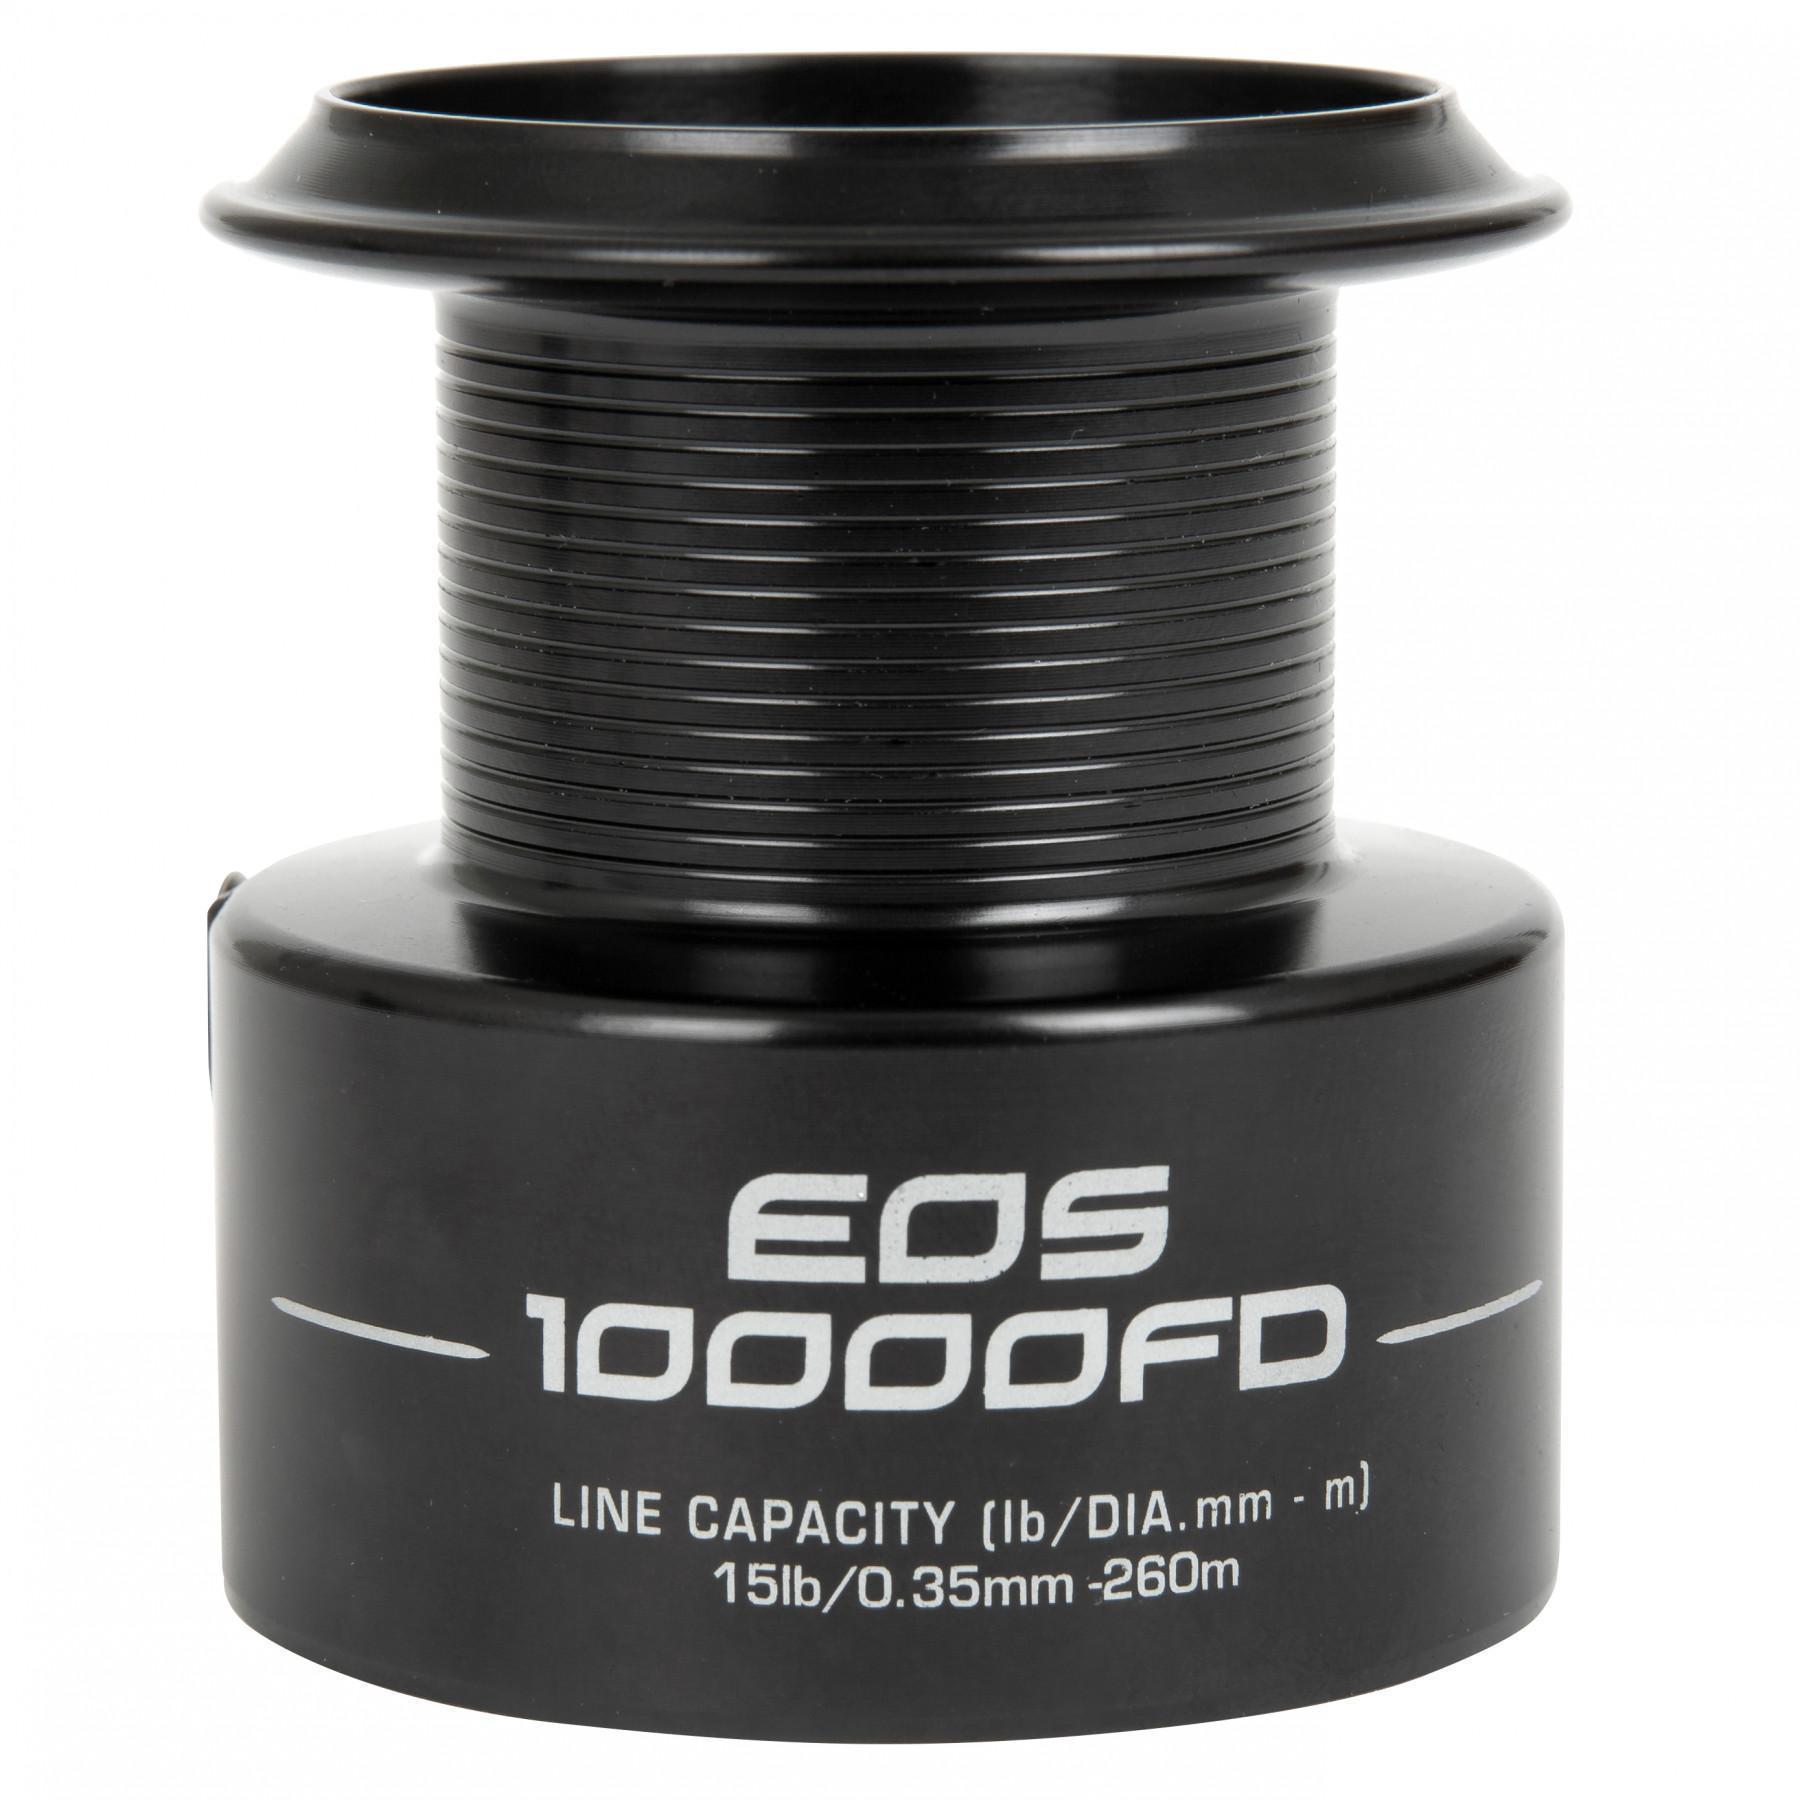 eos Ersatzspule für Haspel Fox 10000 FD